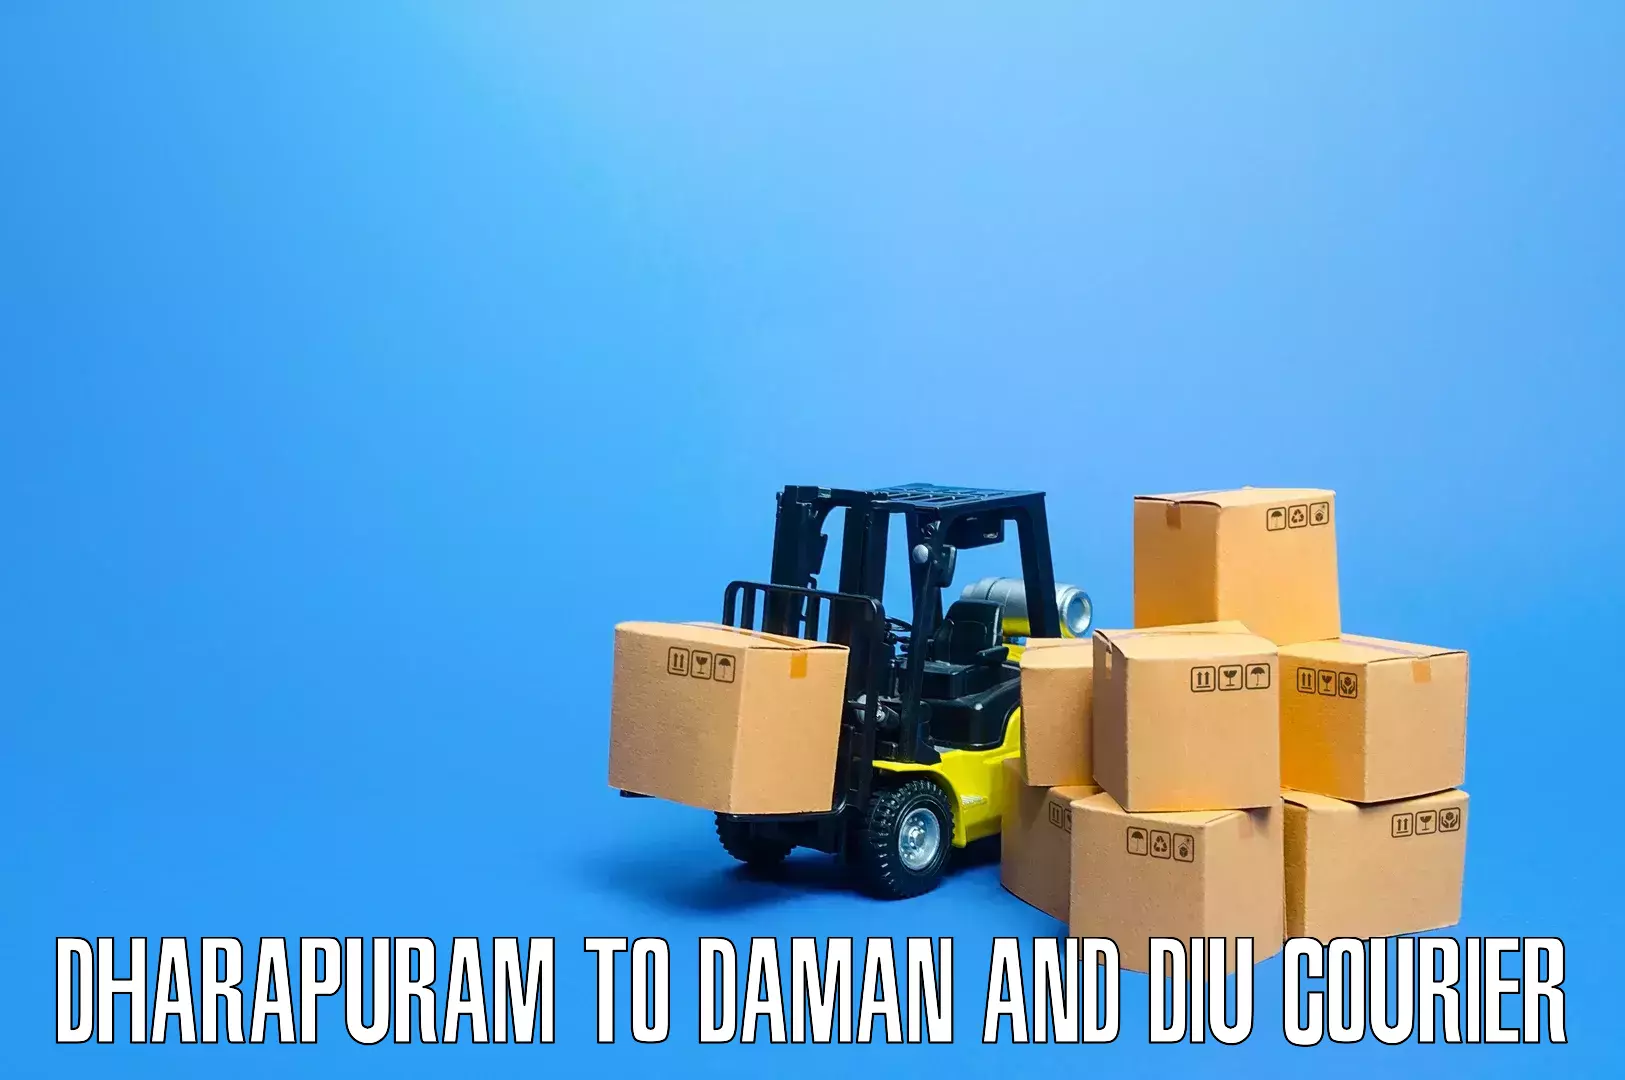 Stress-free moving in Dharapuram to Diu